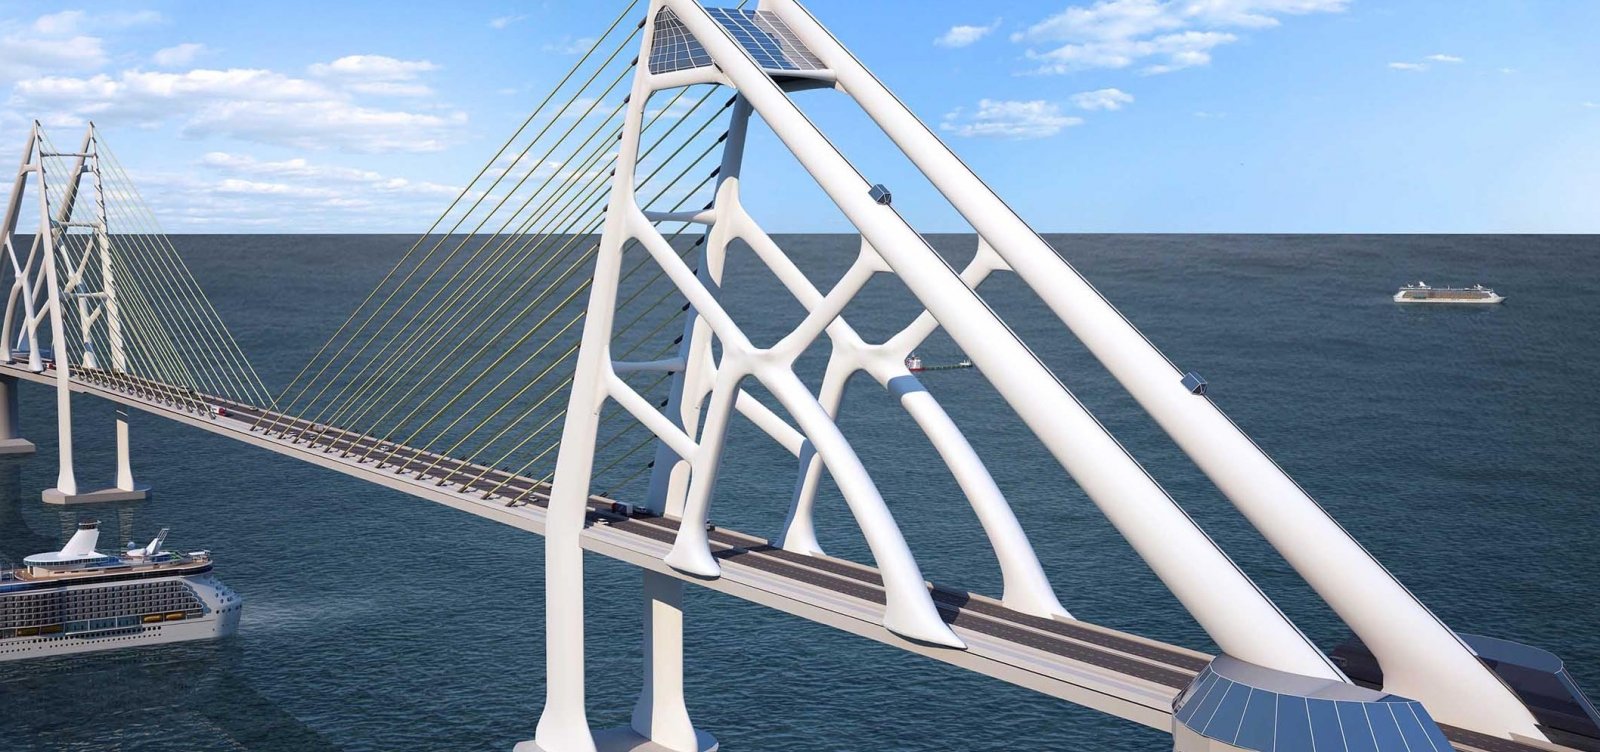 Pedágio da Ponte Salvador-Itaparica custará em torno de R$ 40, diz vice-governador